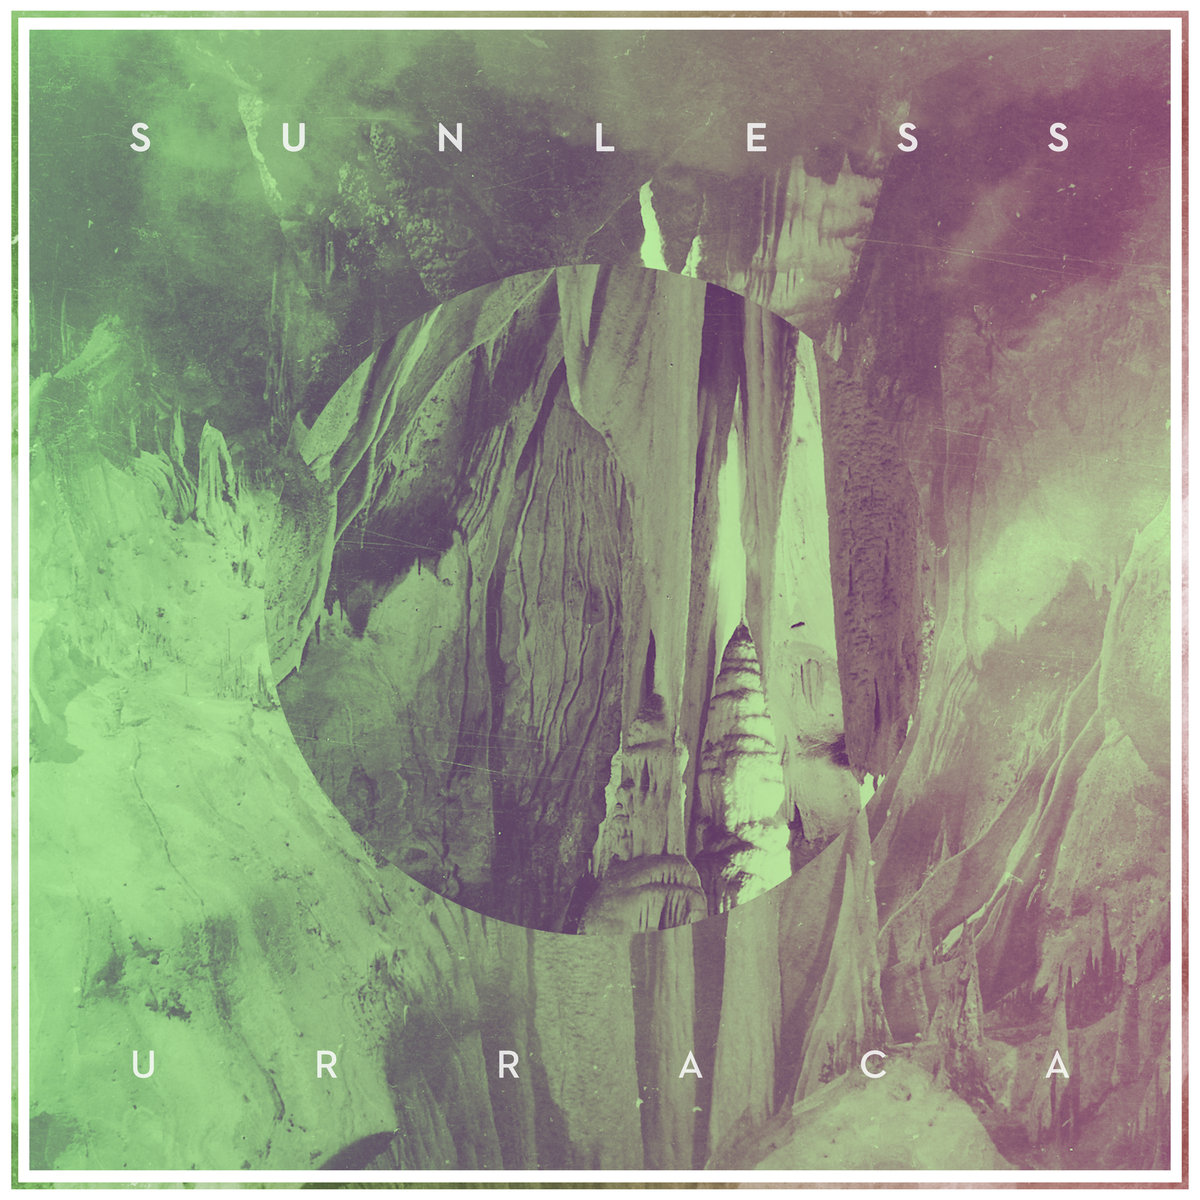 SUNLESS todos los detalles de su debut “Urraca” en linea